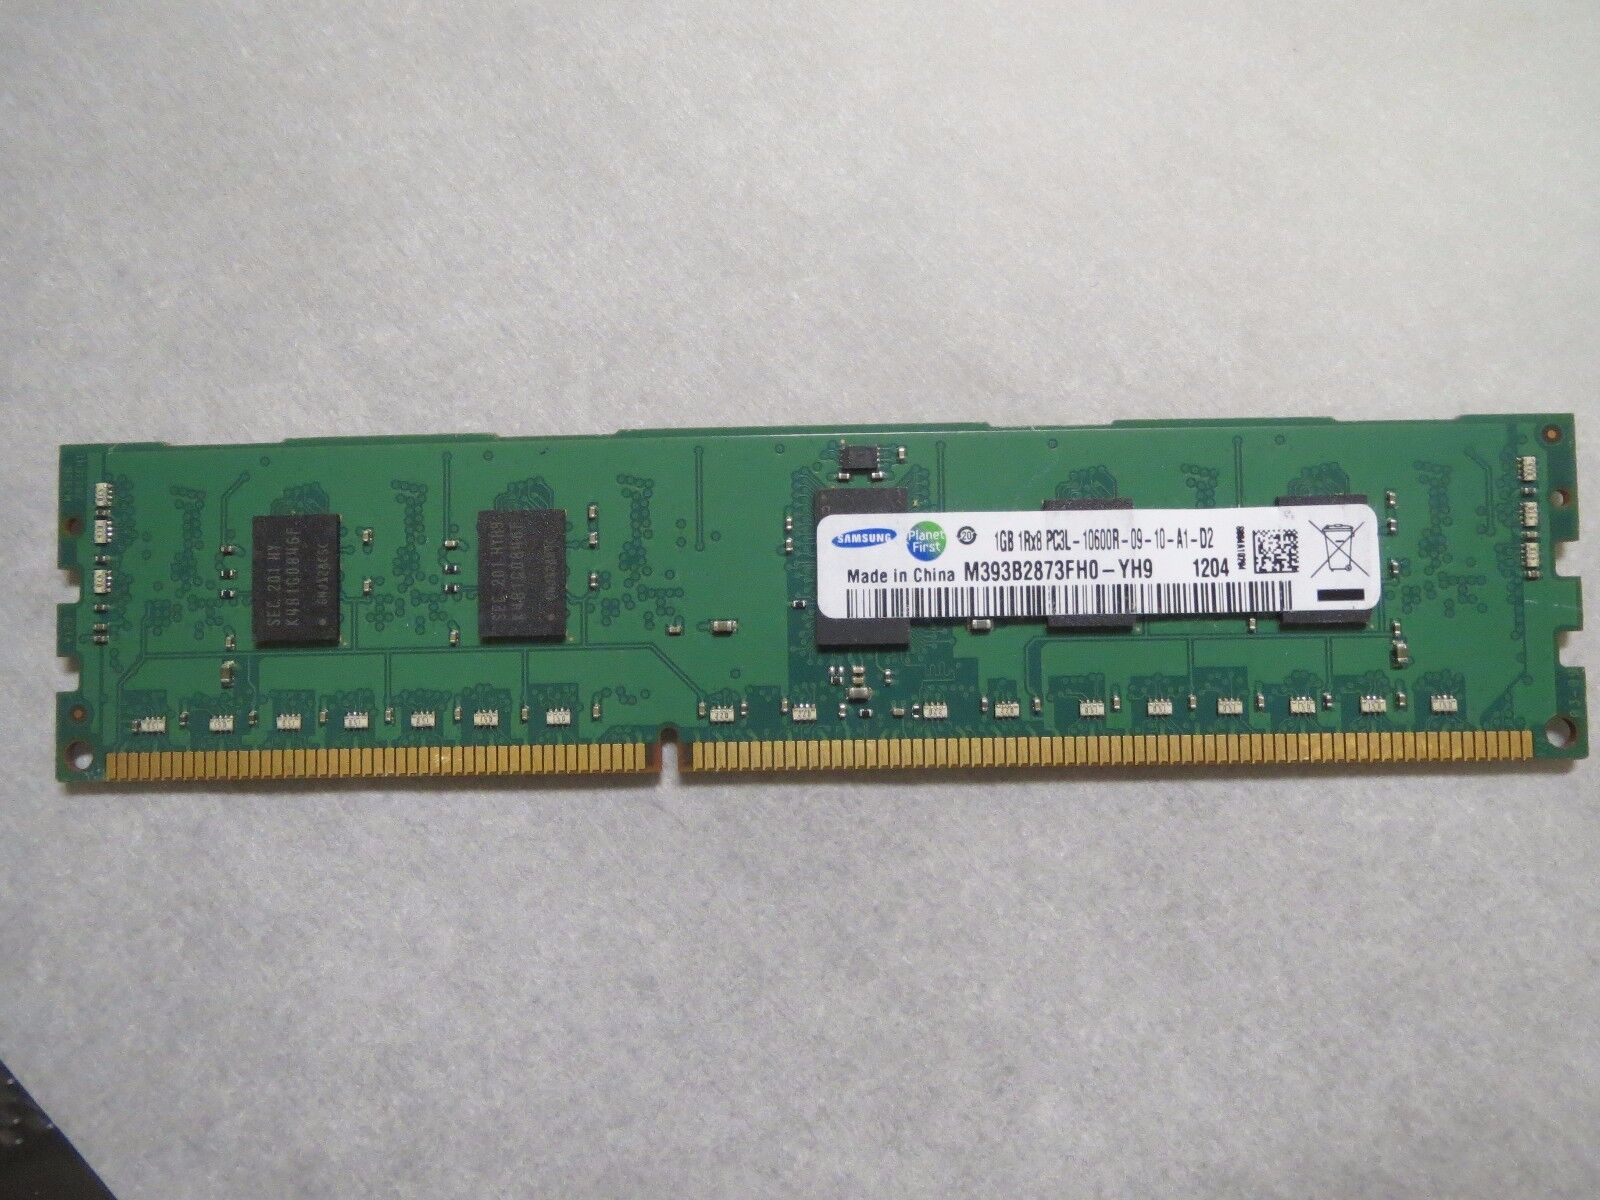 GENUINE SAMSUNG 1 GB 1RX8 PC3L-10600R-09-10-A1-D2 M393B2873FH0-YH9 MEMORY RAM